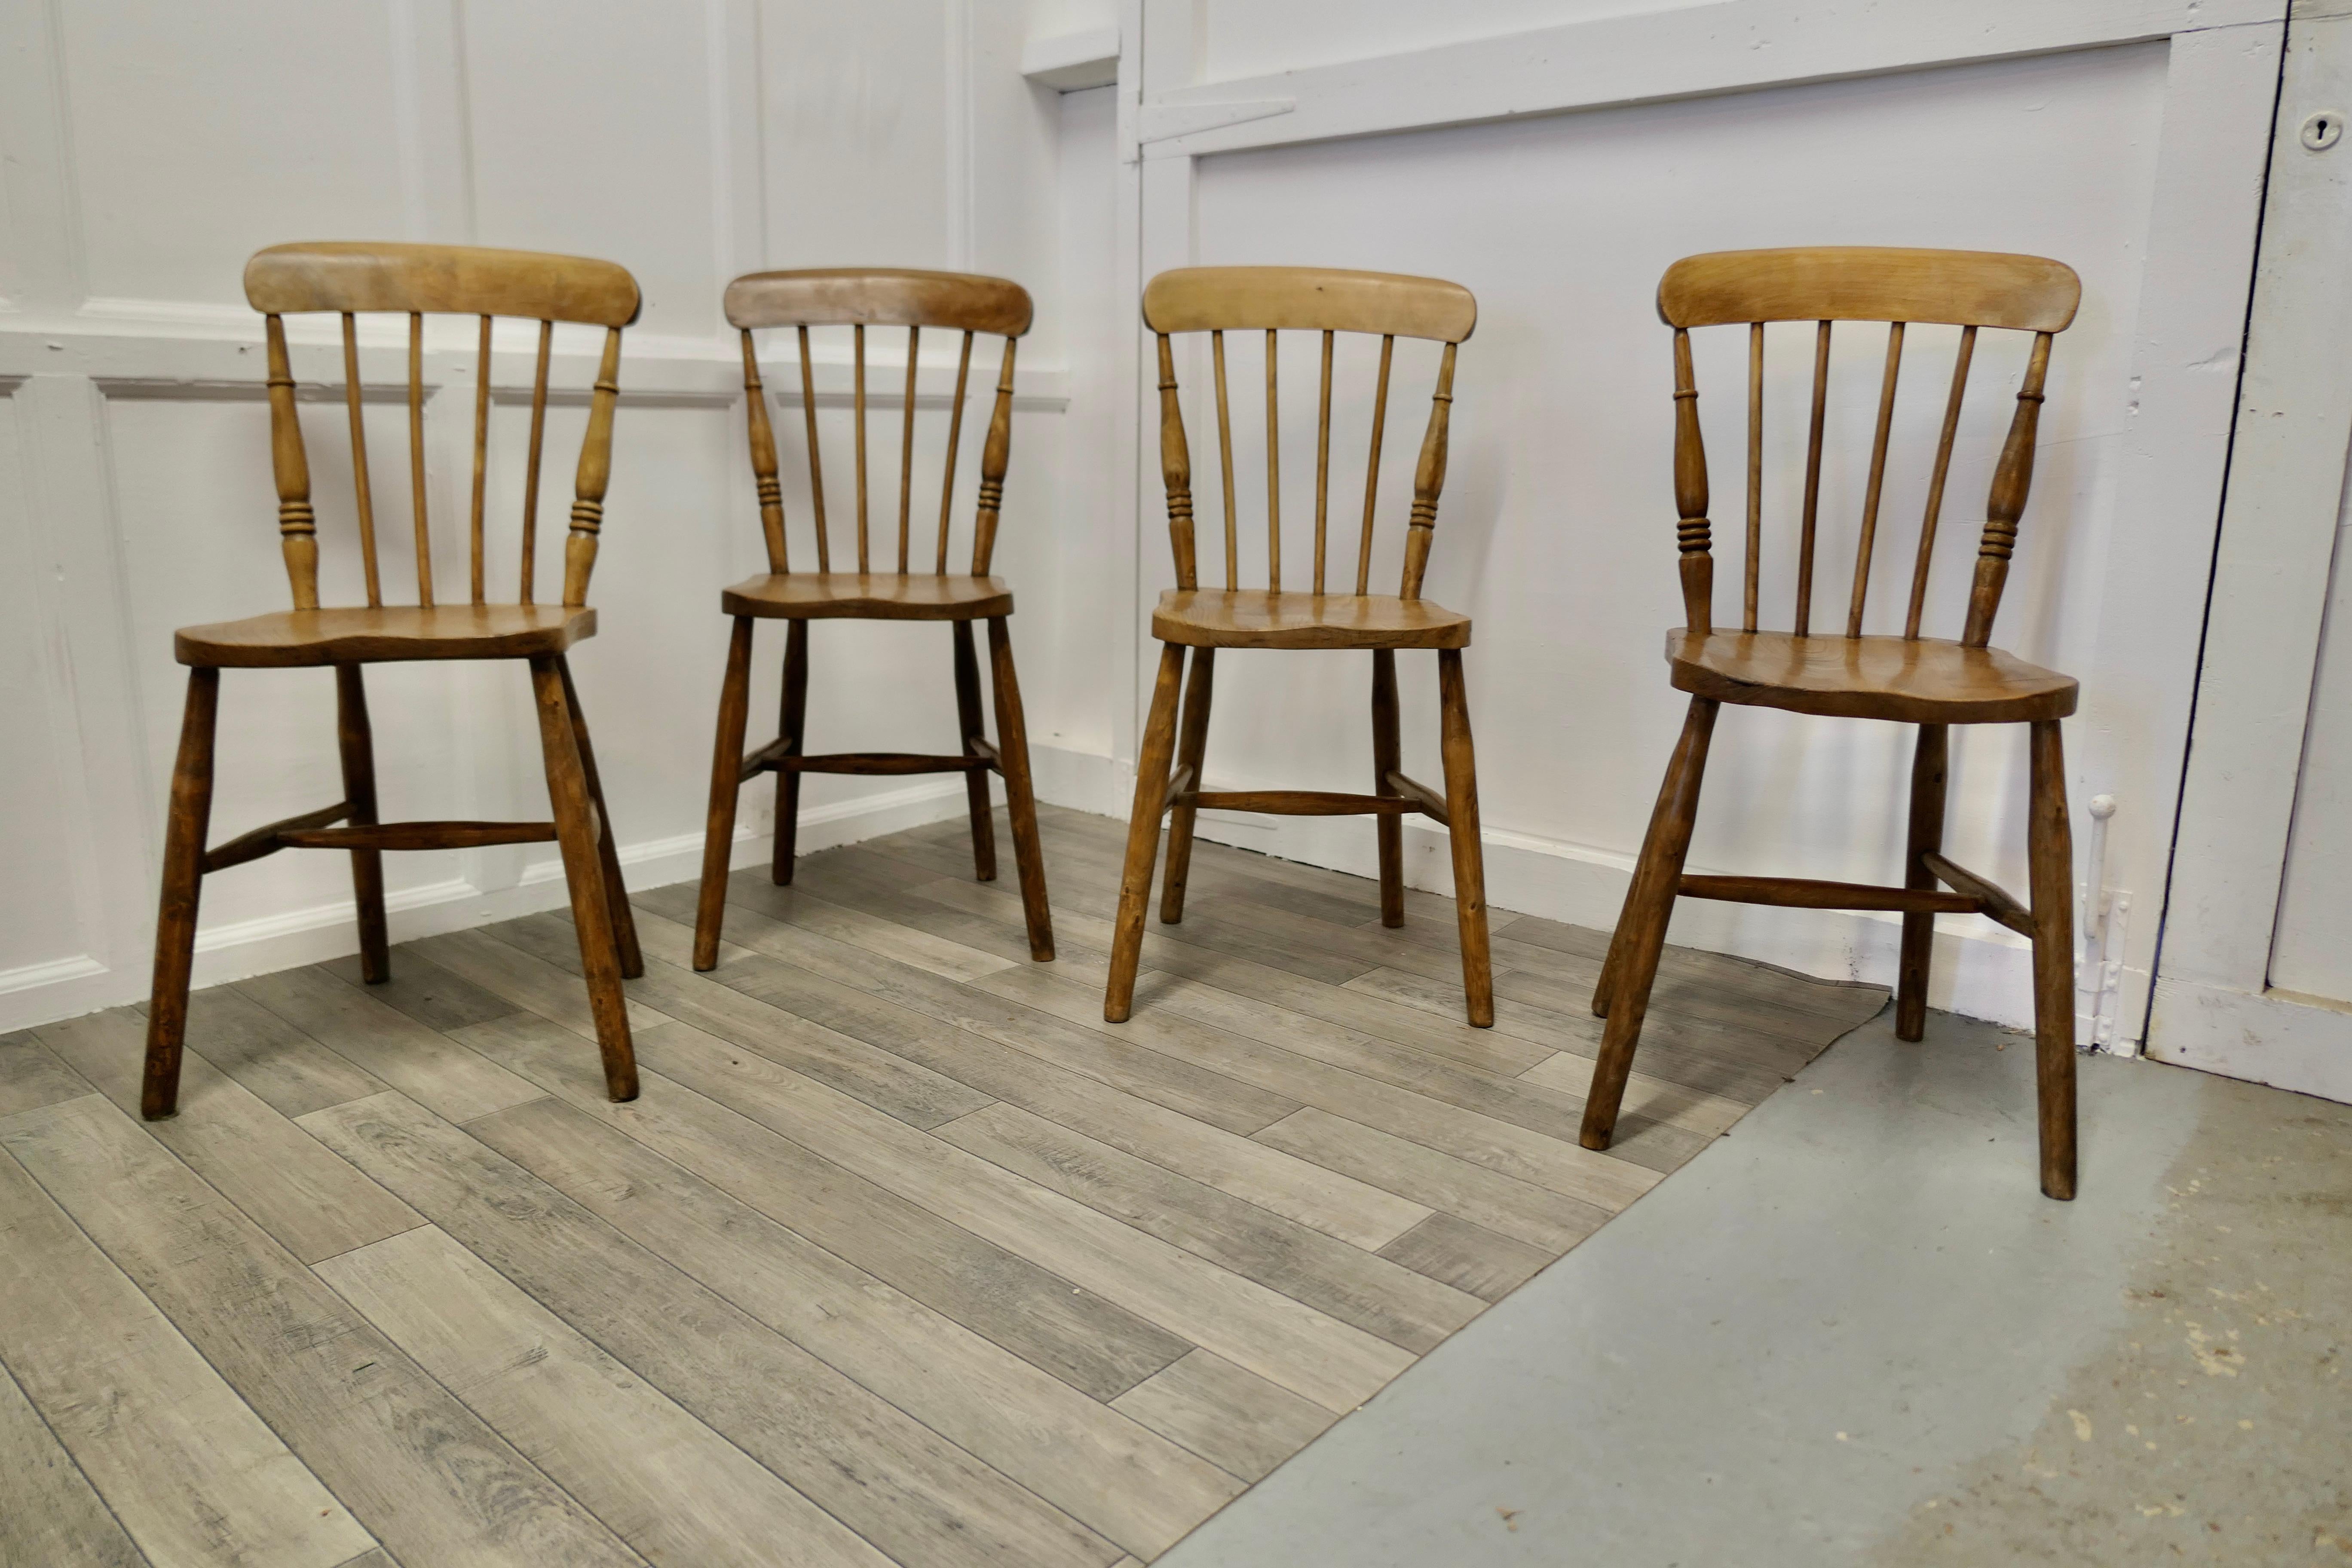 Satz von 4 Stühlen aus Buche und Ulme mit Stangenlehne für die Küche.


Die Stühle sind klassisch und traditionell aus Massivholz gefertigt und haben eine geschwungene Rückenlehne im traditionellen Stil mit Spindeln. 
Dies sind eine gute Reihe